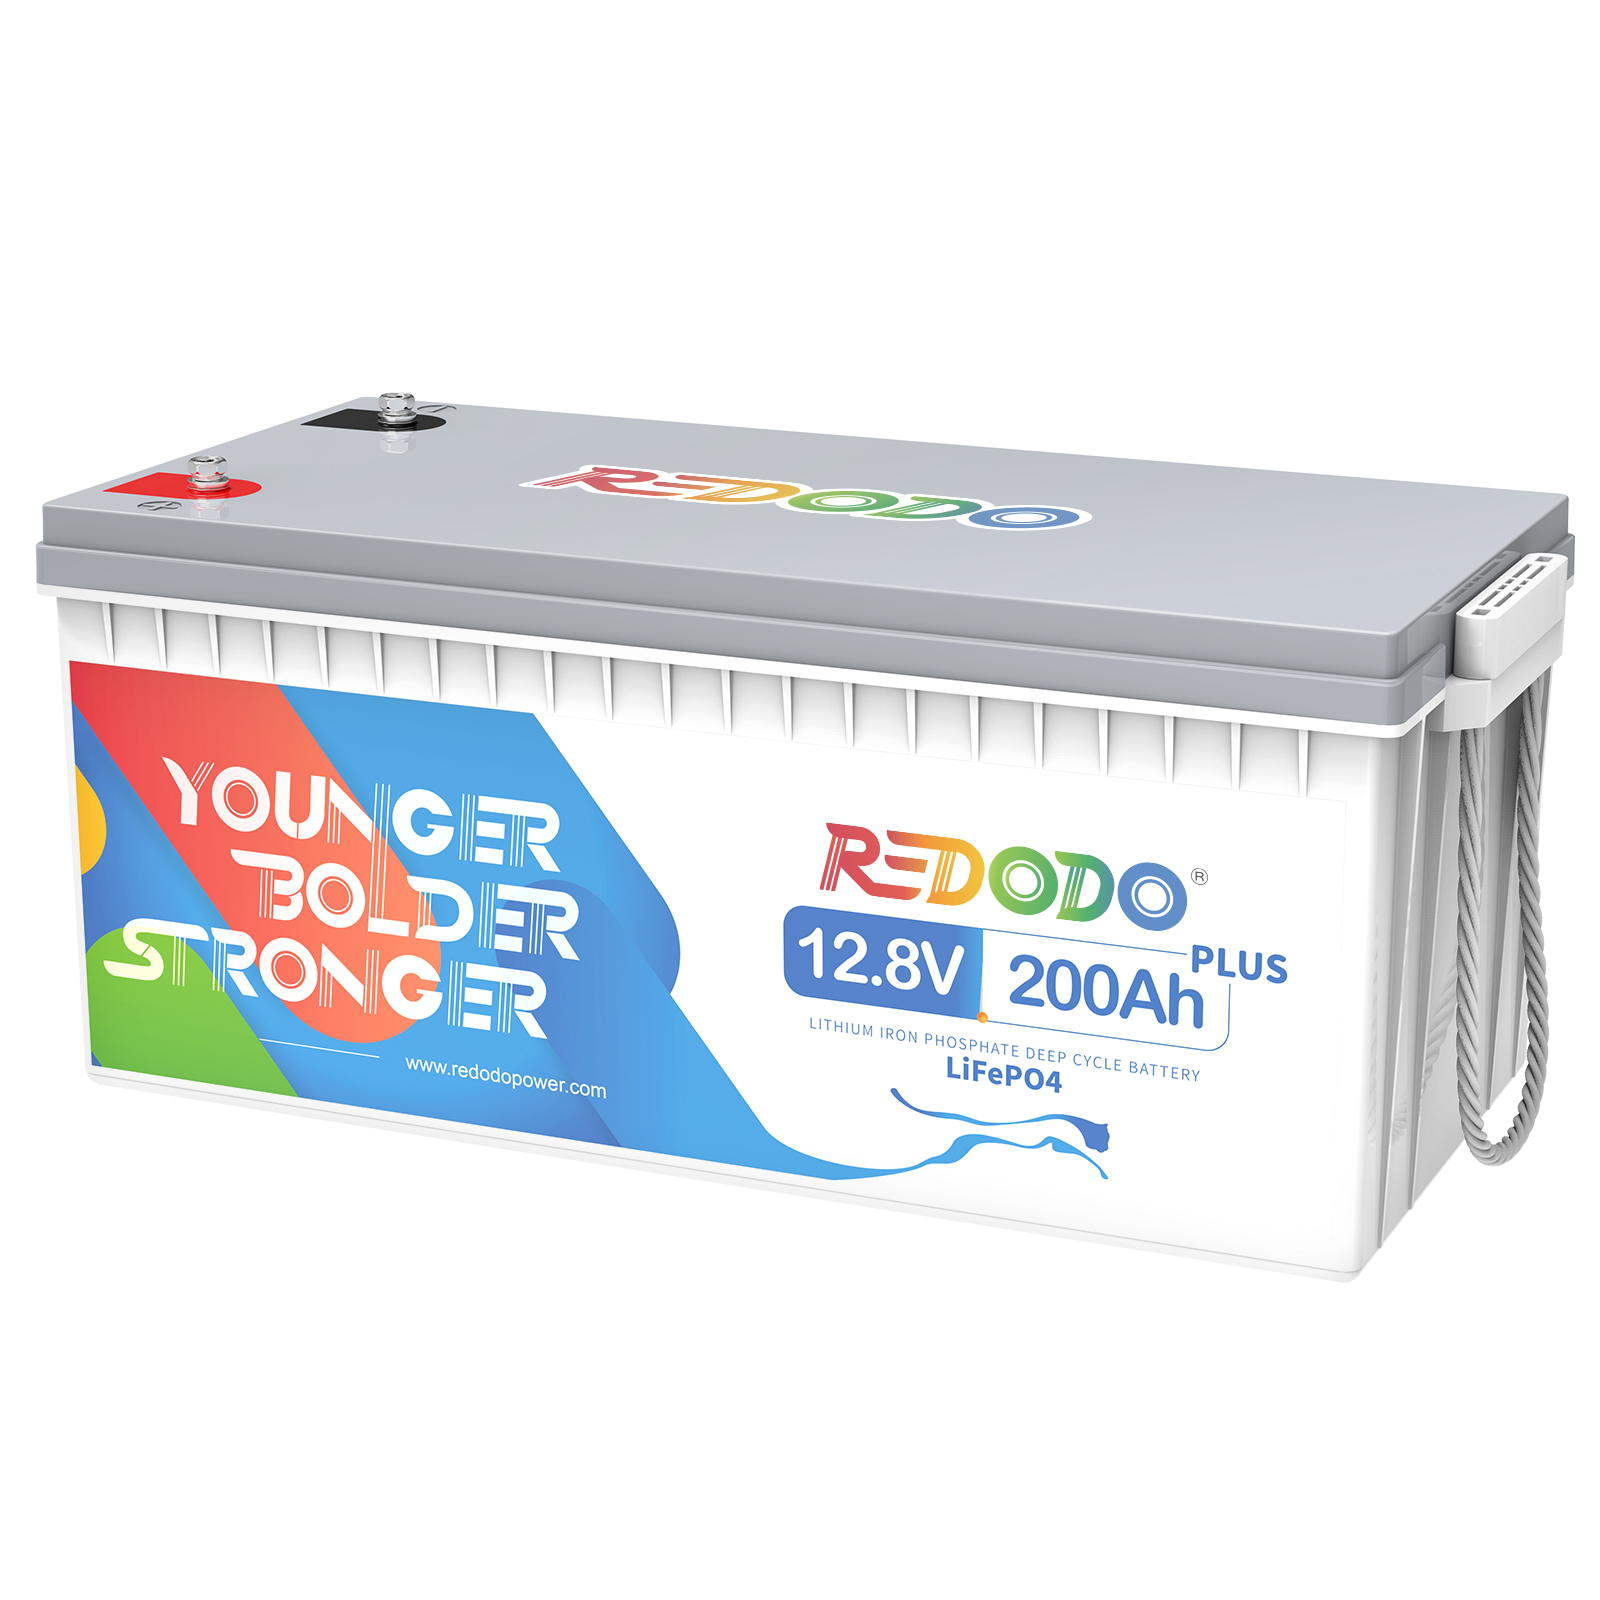 Redodo 12V 200Ah Plus LiFePO4 Battery | 2.56kWh & 2.56kW